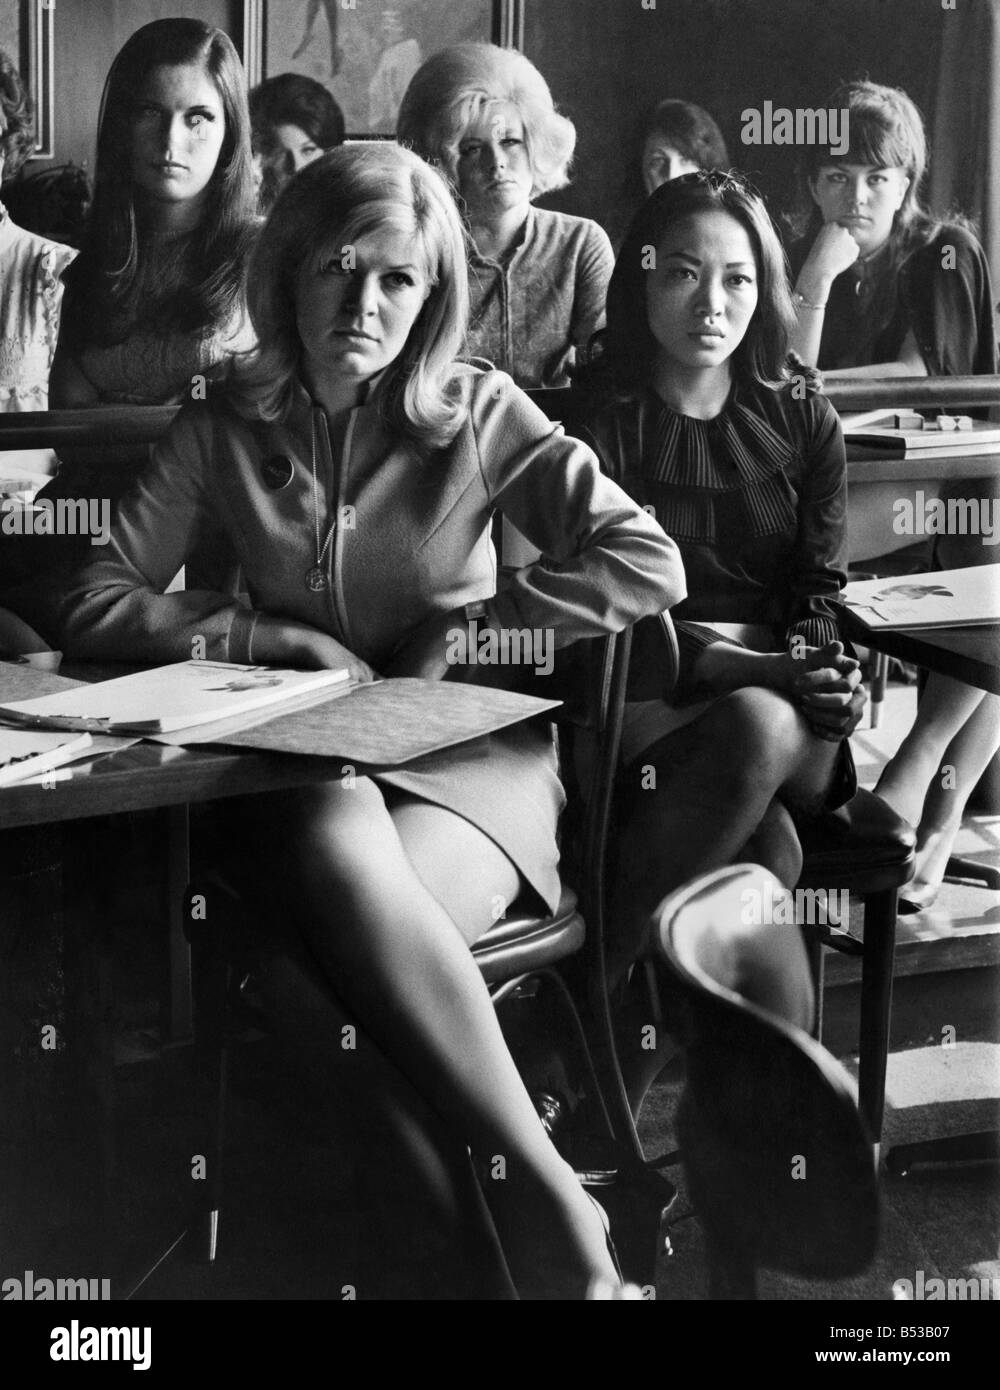 Playboy Bunnies Club école. Femme assise apprendre comment devenir un lapin pendant une classe;Avril 1968;P018499 Banque D'Images